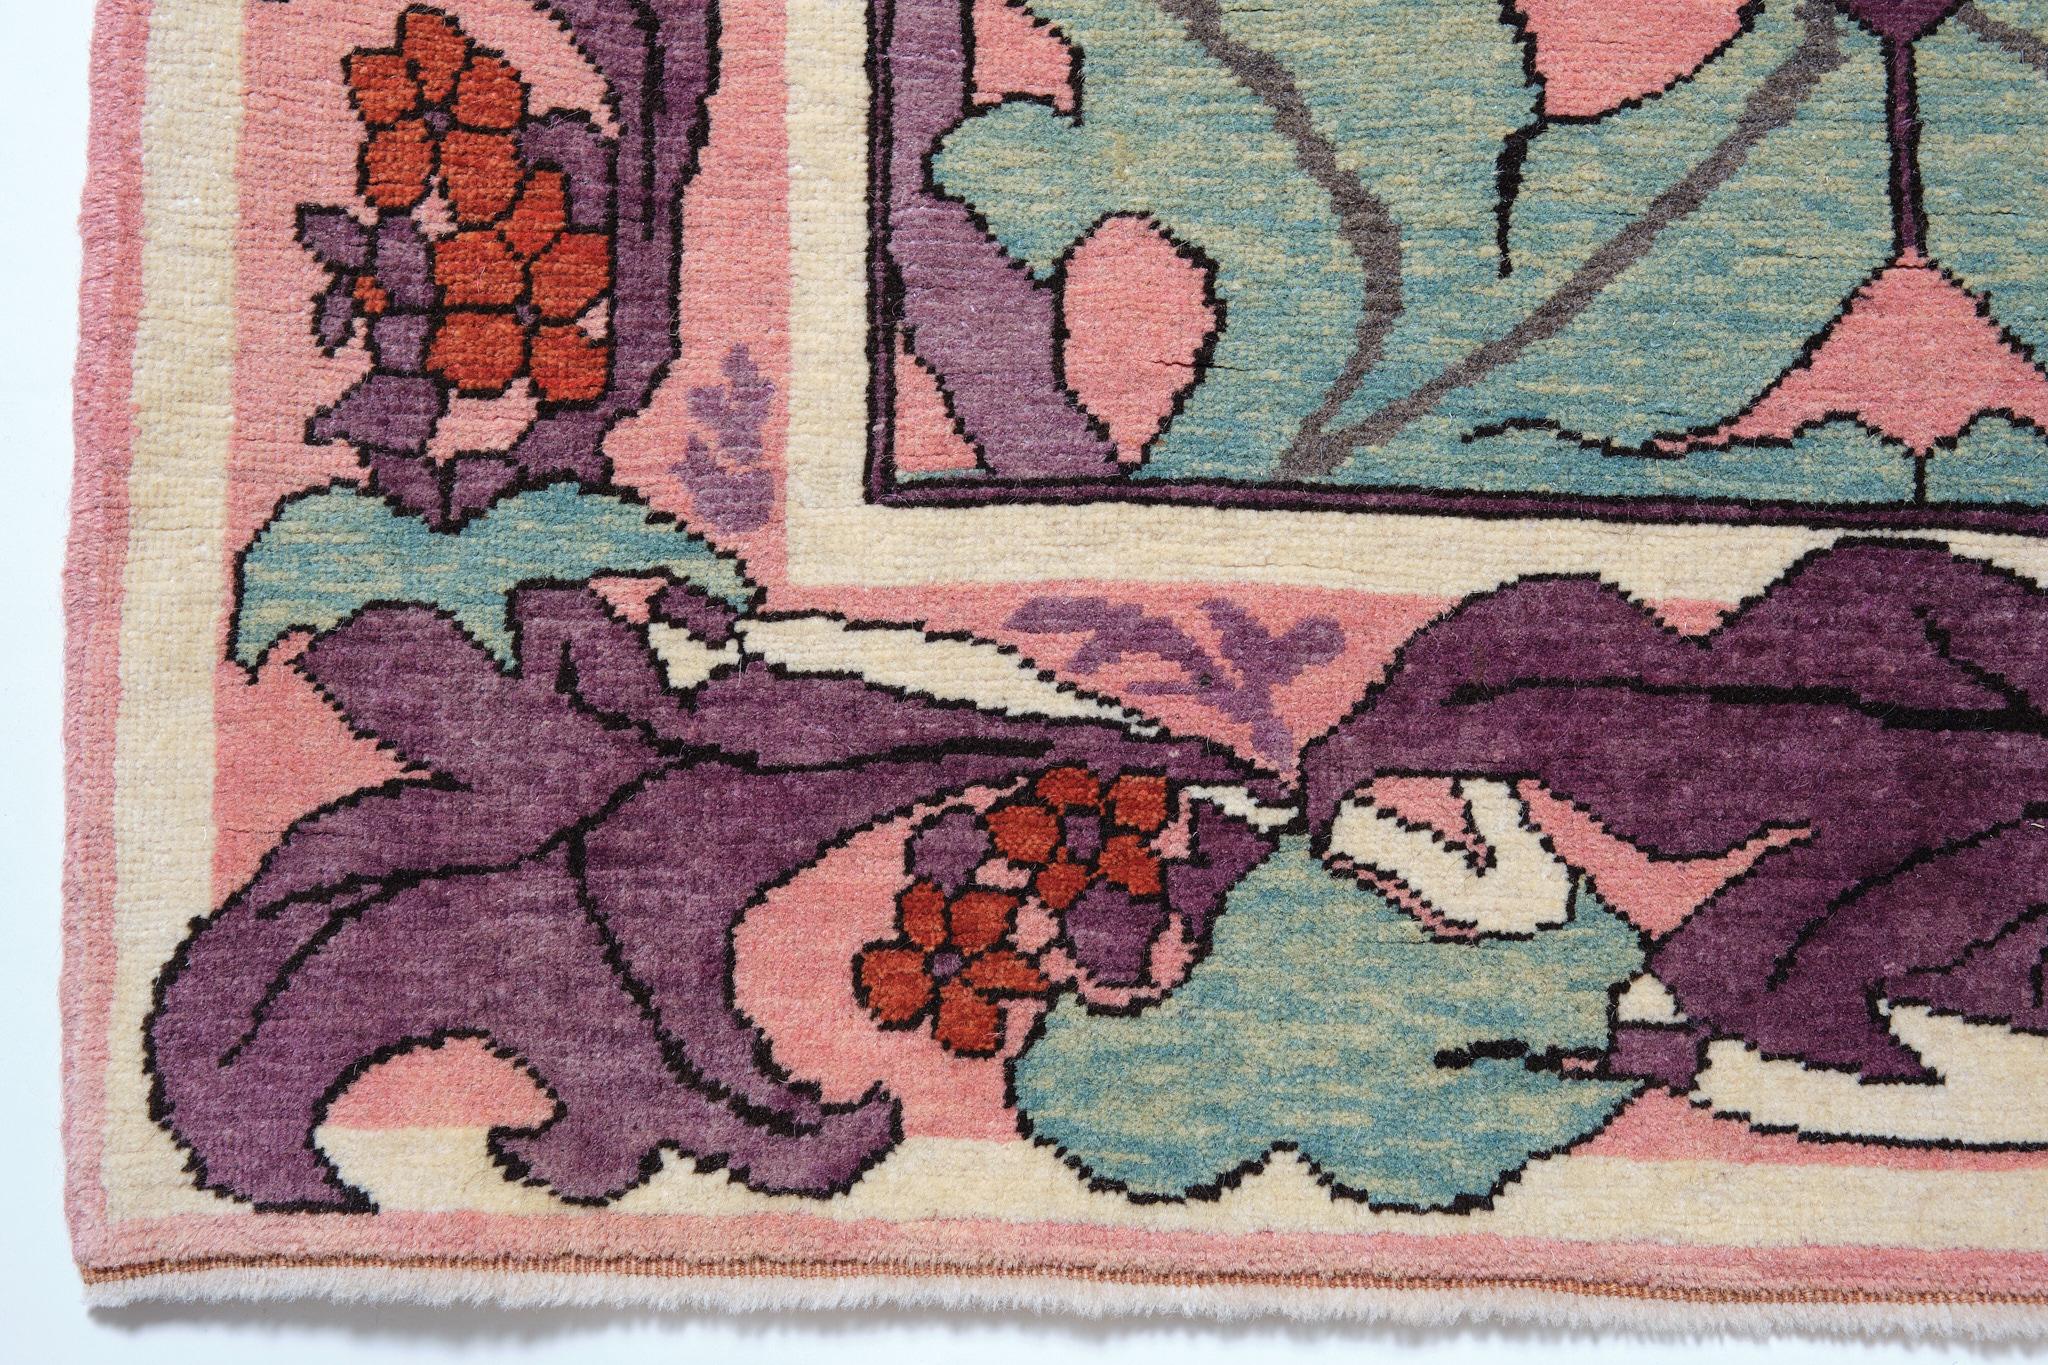 La source du tapis provient du livre Arts & Crafts Carpets, de Malcolm Haslam, et David Black, 1991, fig.55. Ce tapis Donegal a probablement été conçu par le Silver Studio pour Liberty's vers 1902, Royaume-Uni. En 1887, l'artiste et relieur anglais